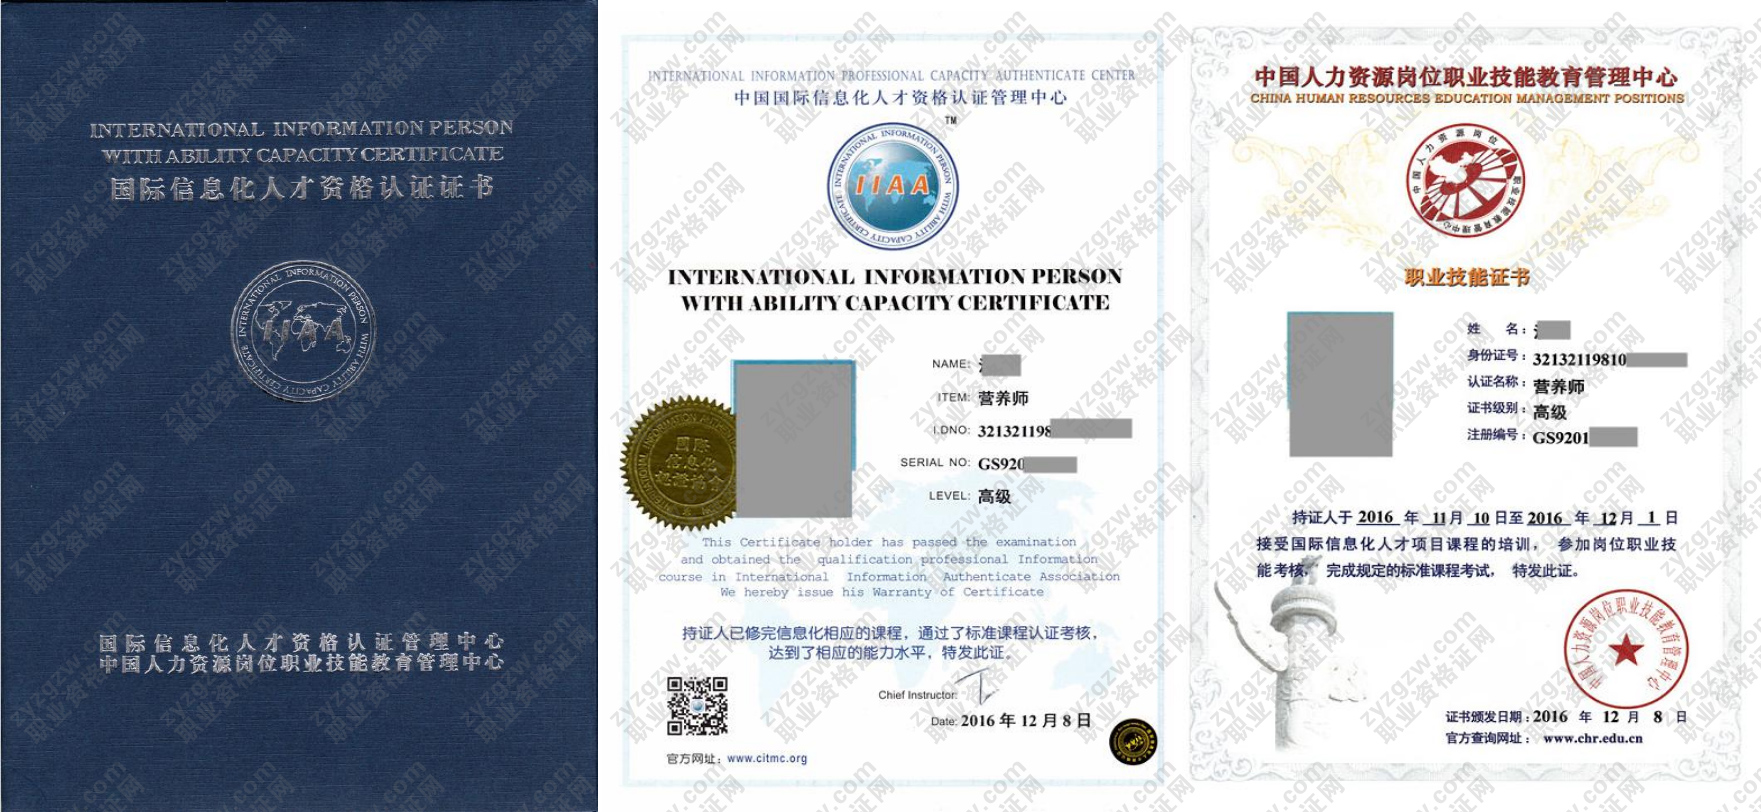 中国人力资源岗位职业技能教育管理中心 汽车维修技师 国际信息化人才资格认证证书